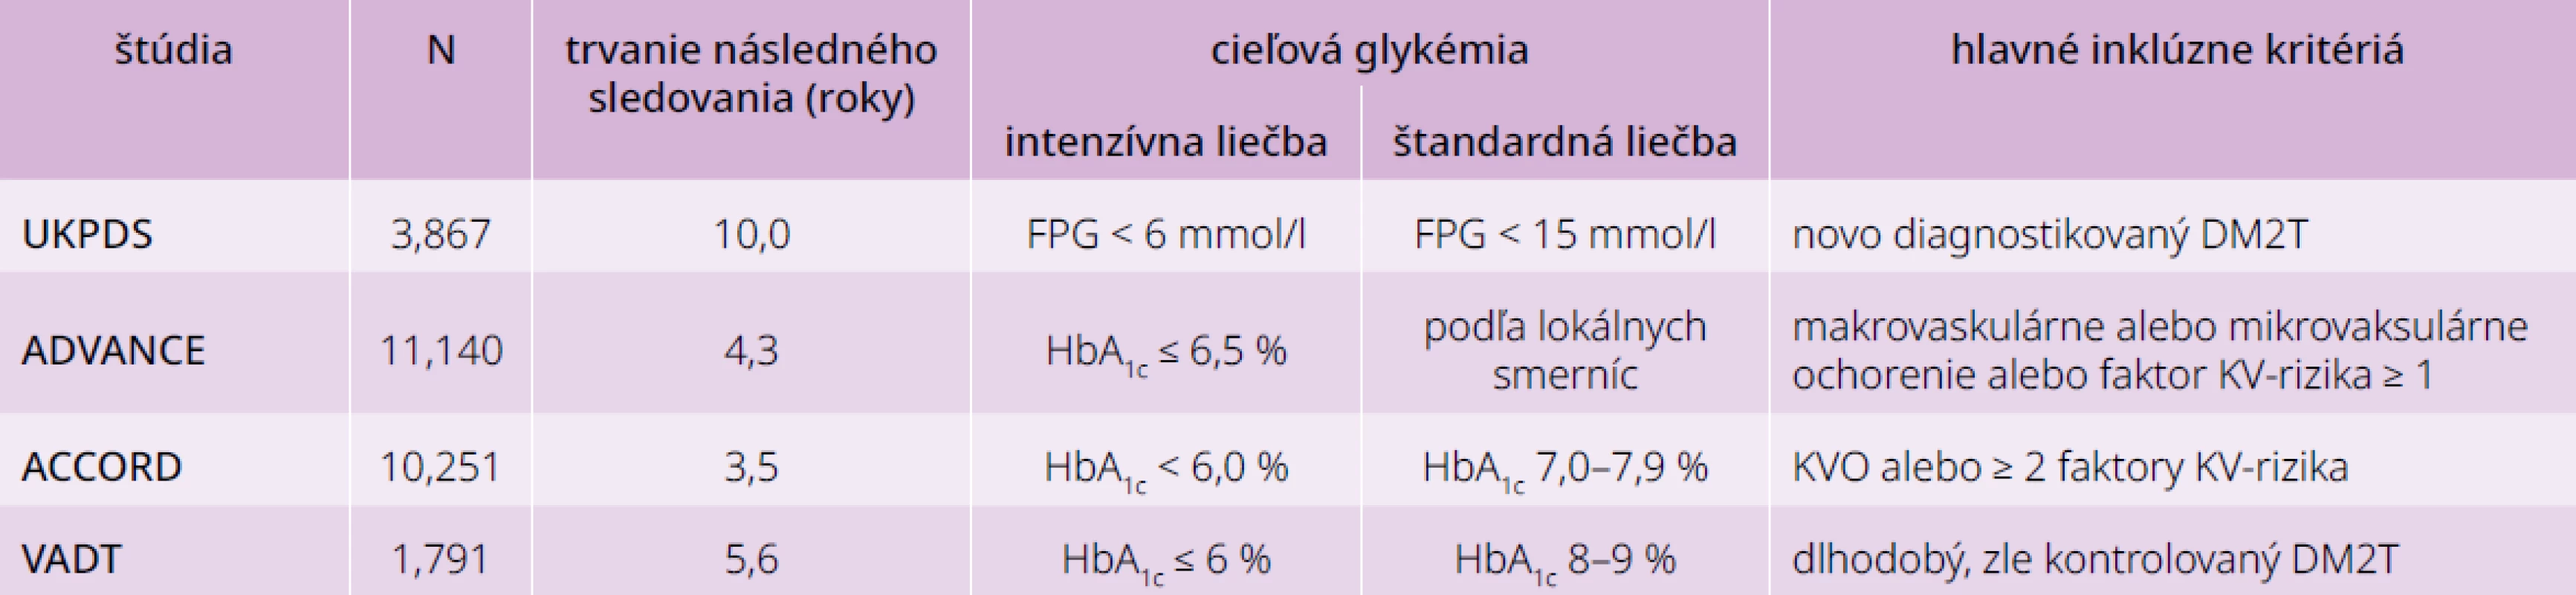 Intenzívna vs štandardná glykemická kompenzácia a riziko chronických diabetických
komplikácií u pacientov s DM2T: porovnanie základných charakteristík. Upravené podľa [2]